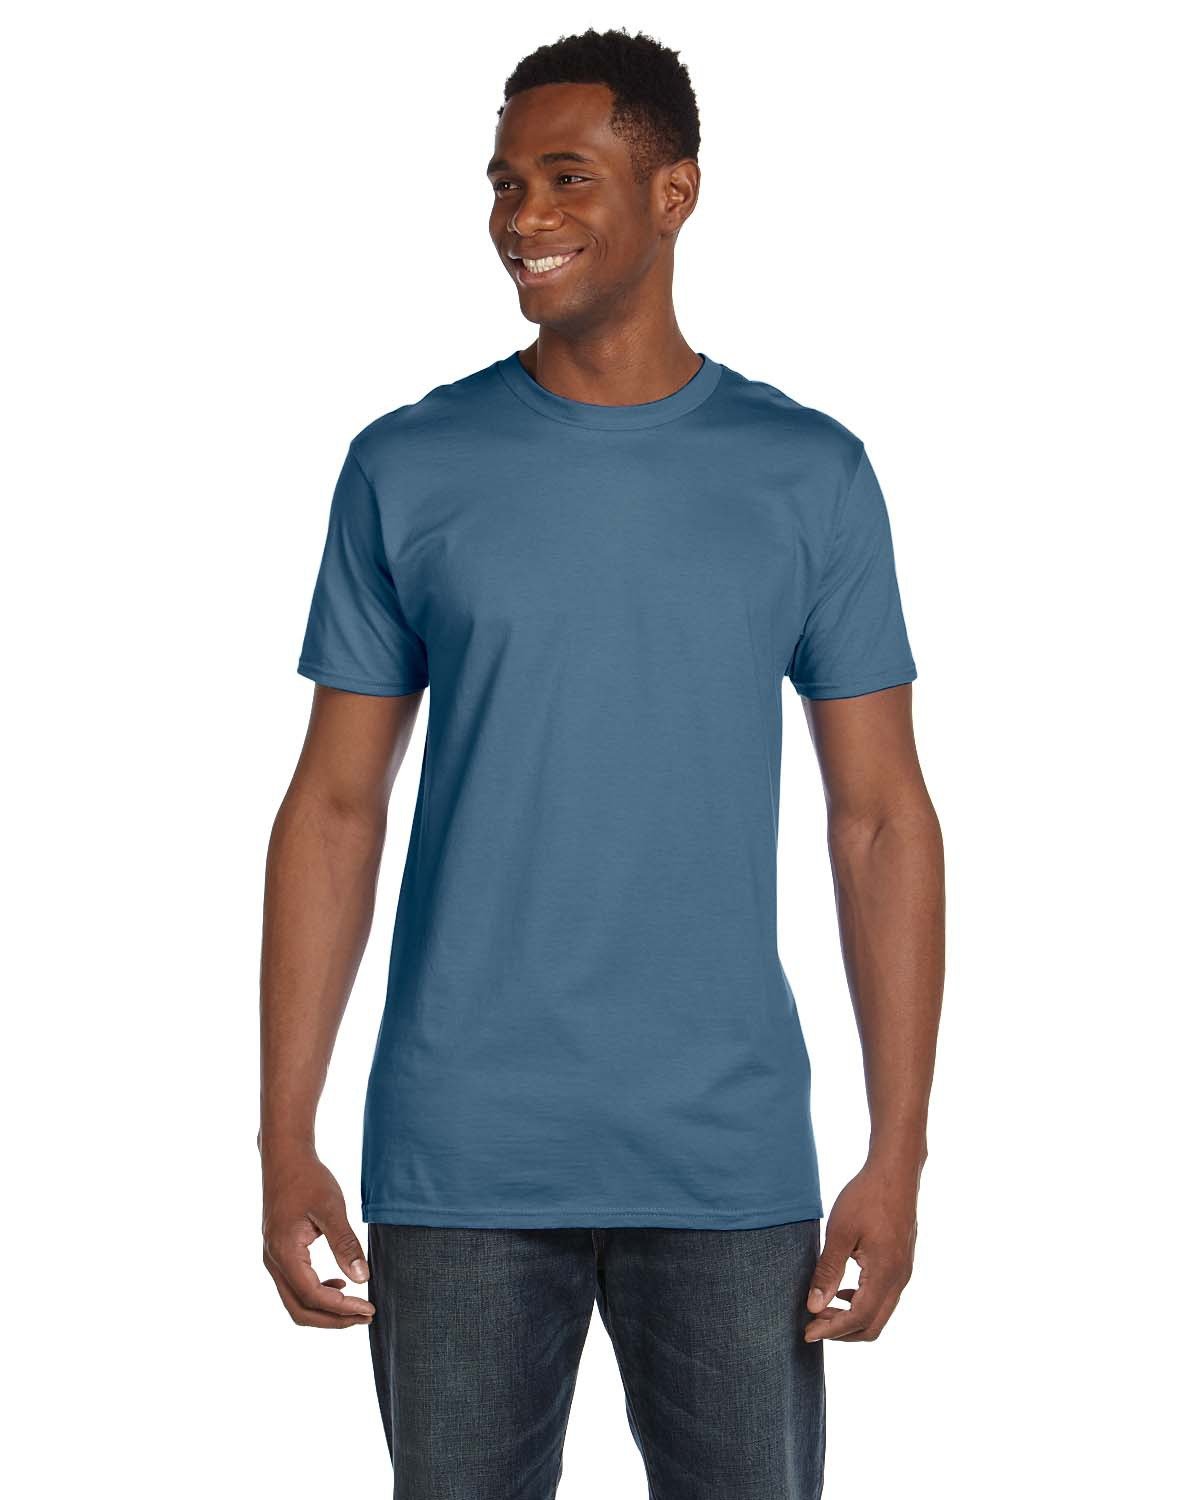 Hanes Men's T-Shirt - Blue - L